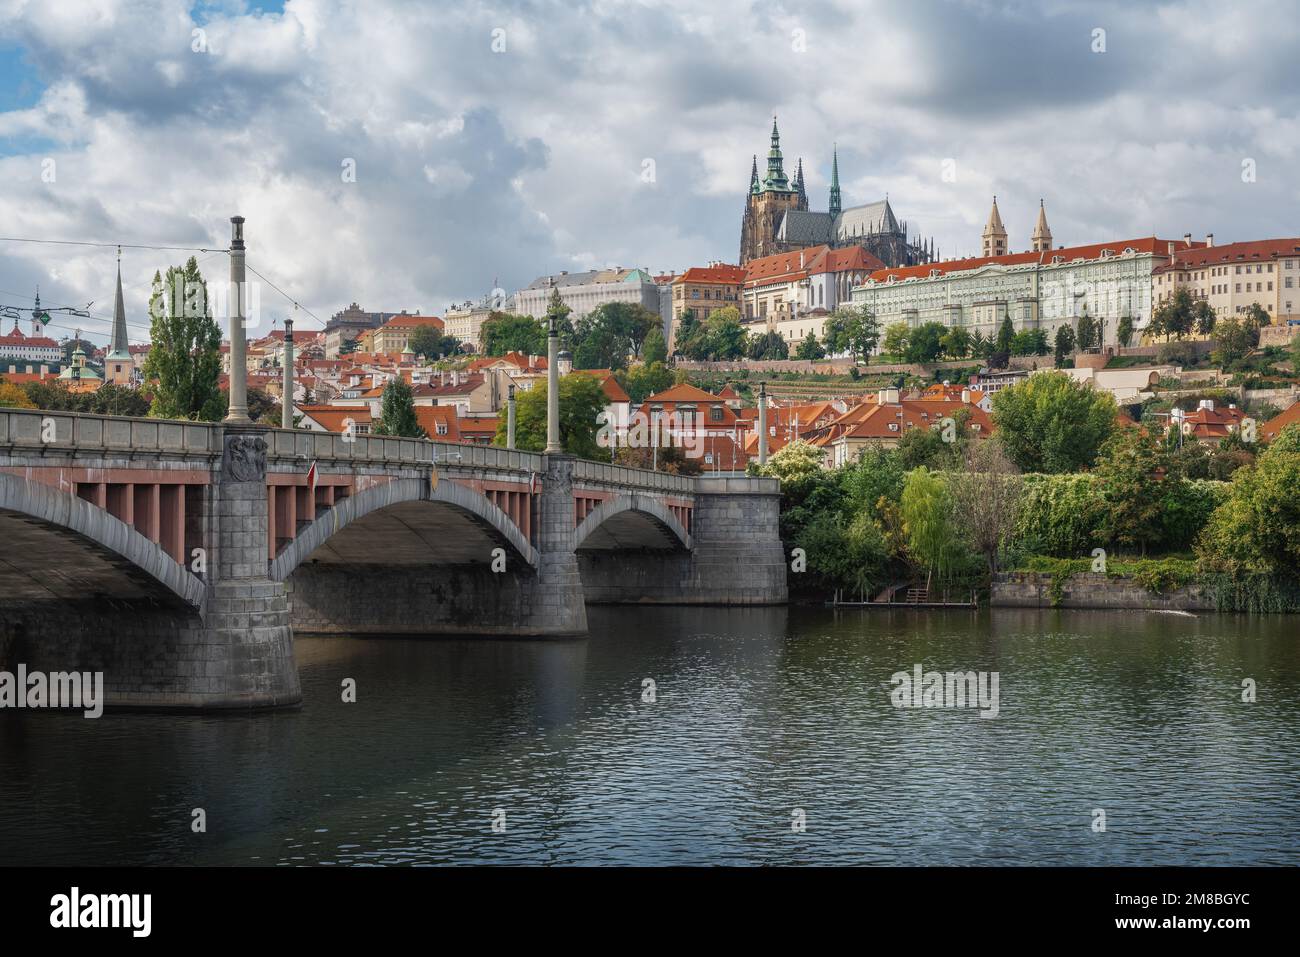 Männerbrücke und Moldau mit der Skyline der Prager Burg - Prag, Tschechische Republik Stockfoto